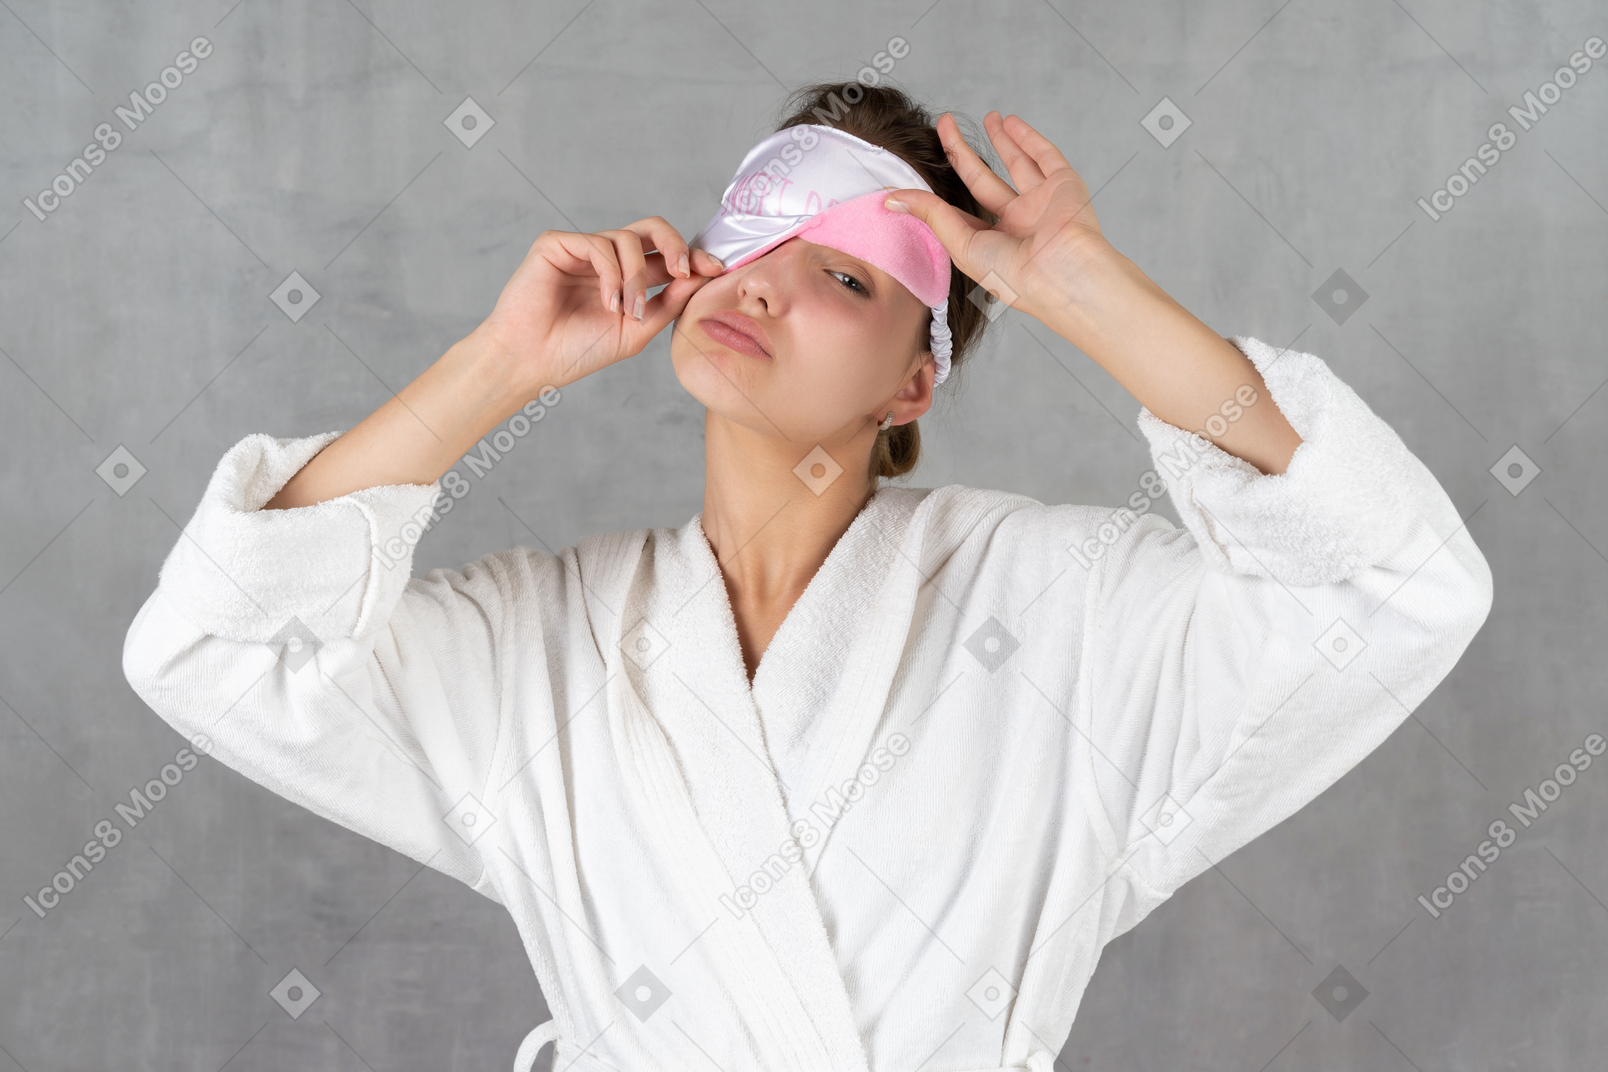 片方の目を覆っている睡眠マスクでバスローブを着ている女性